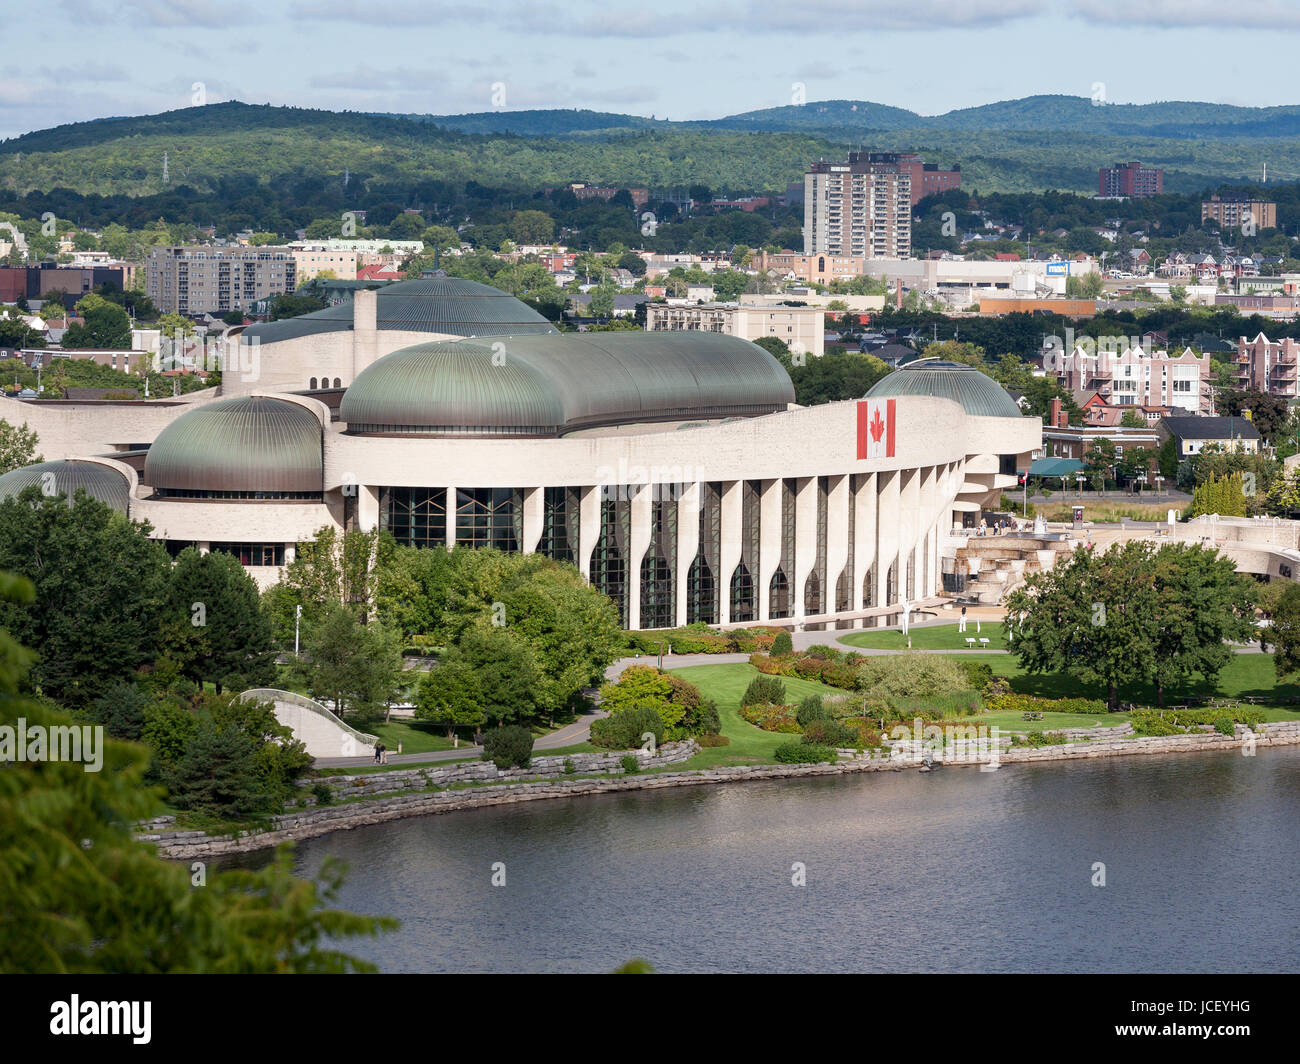 Museo de Historia Canadiense: Grand Hall: Situado enfrente de los edificios del parlamento, en el río Ottawa, este museo es famoso por sus líneas fluidas. Foto de stock